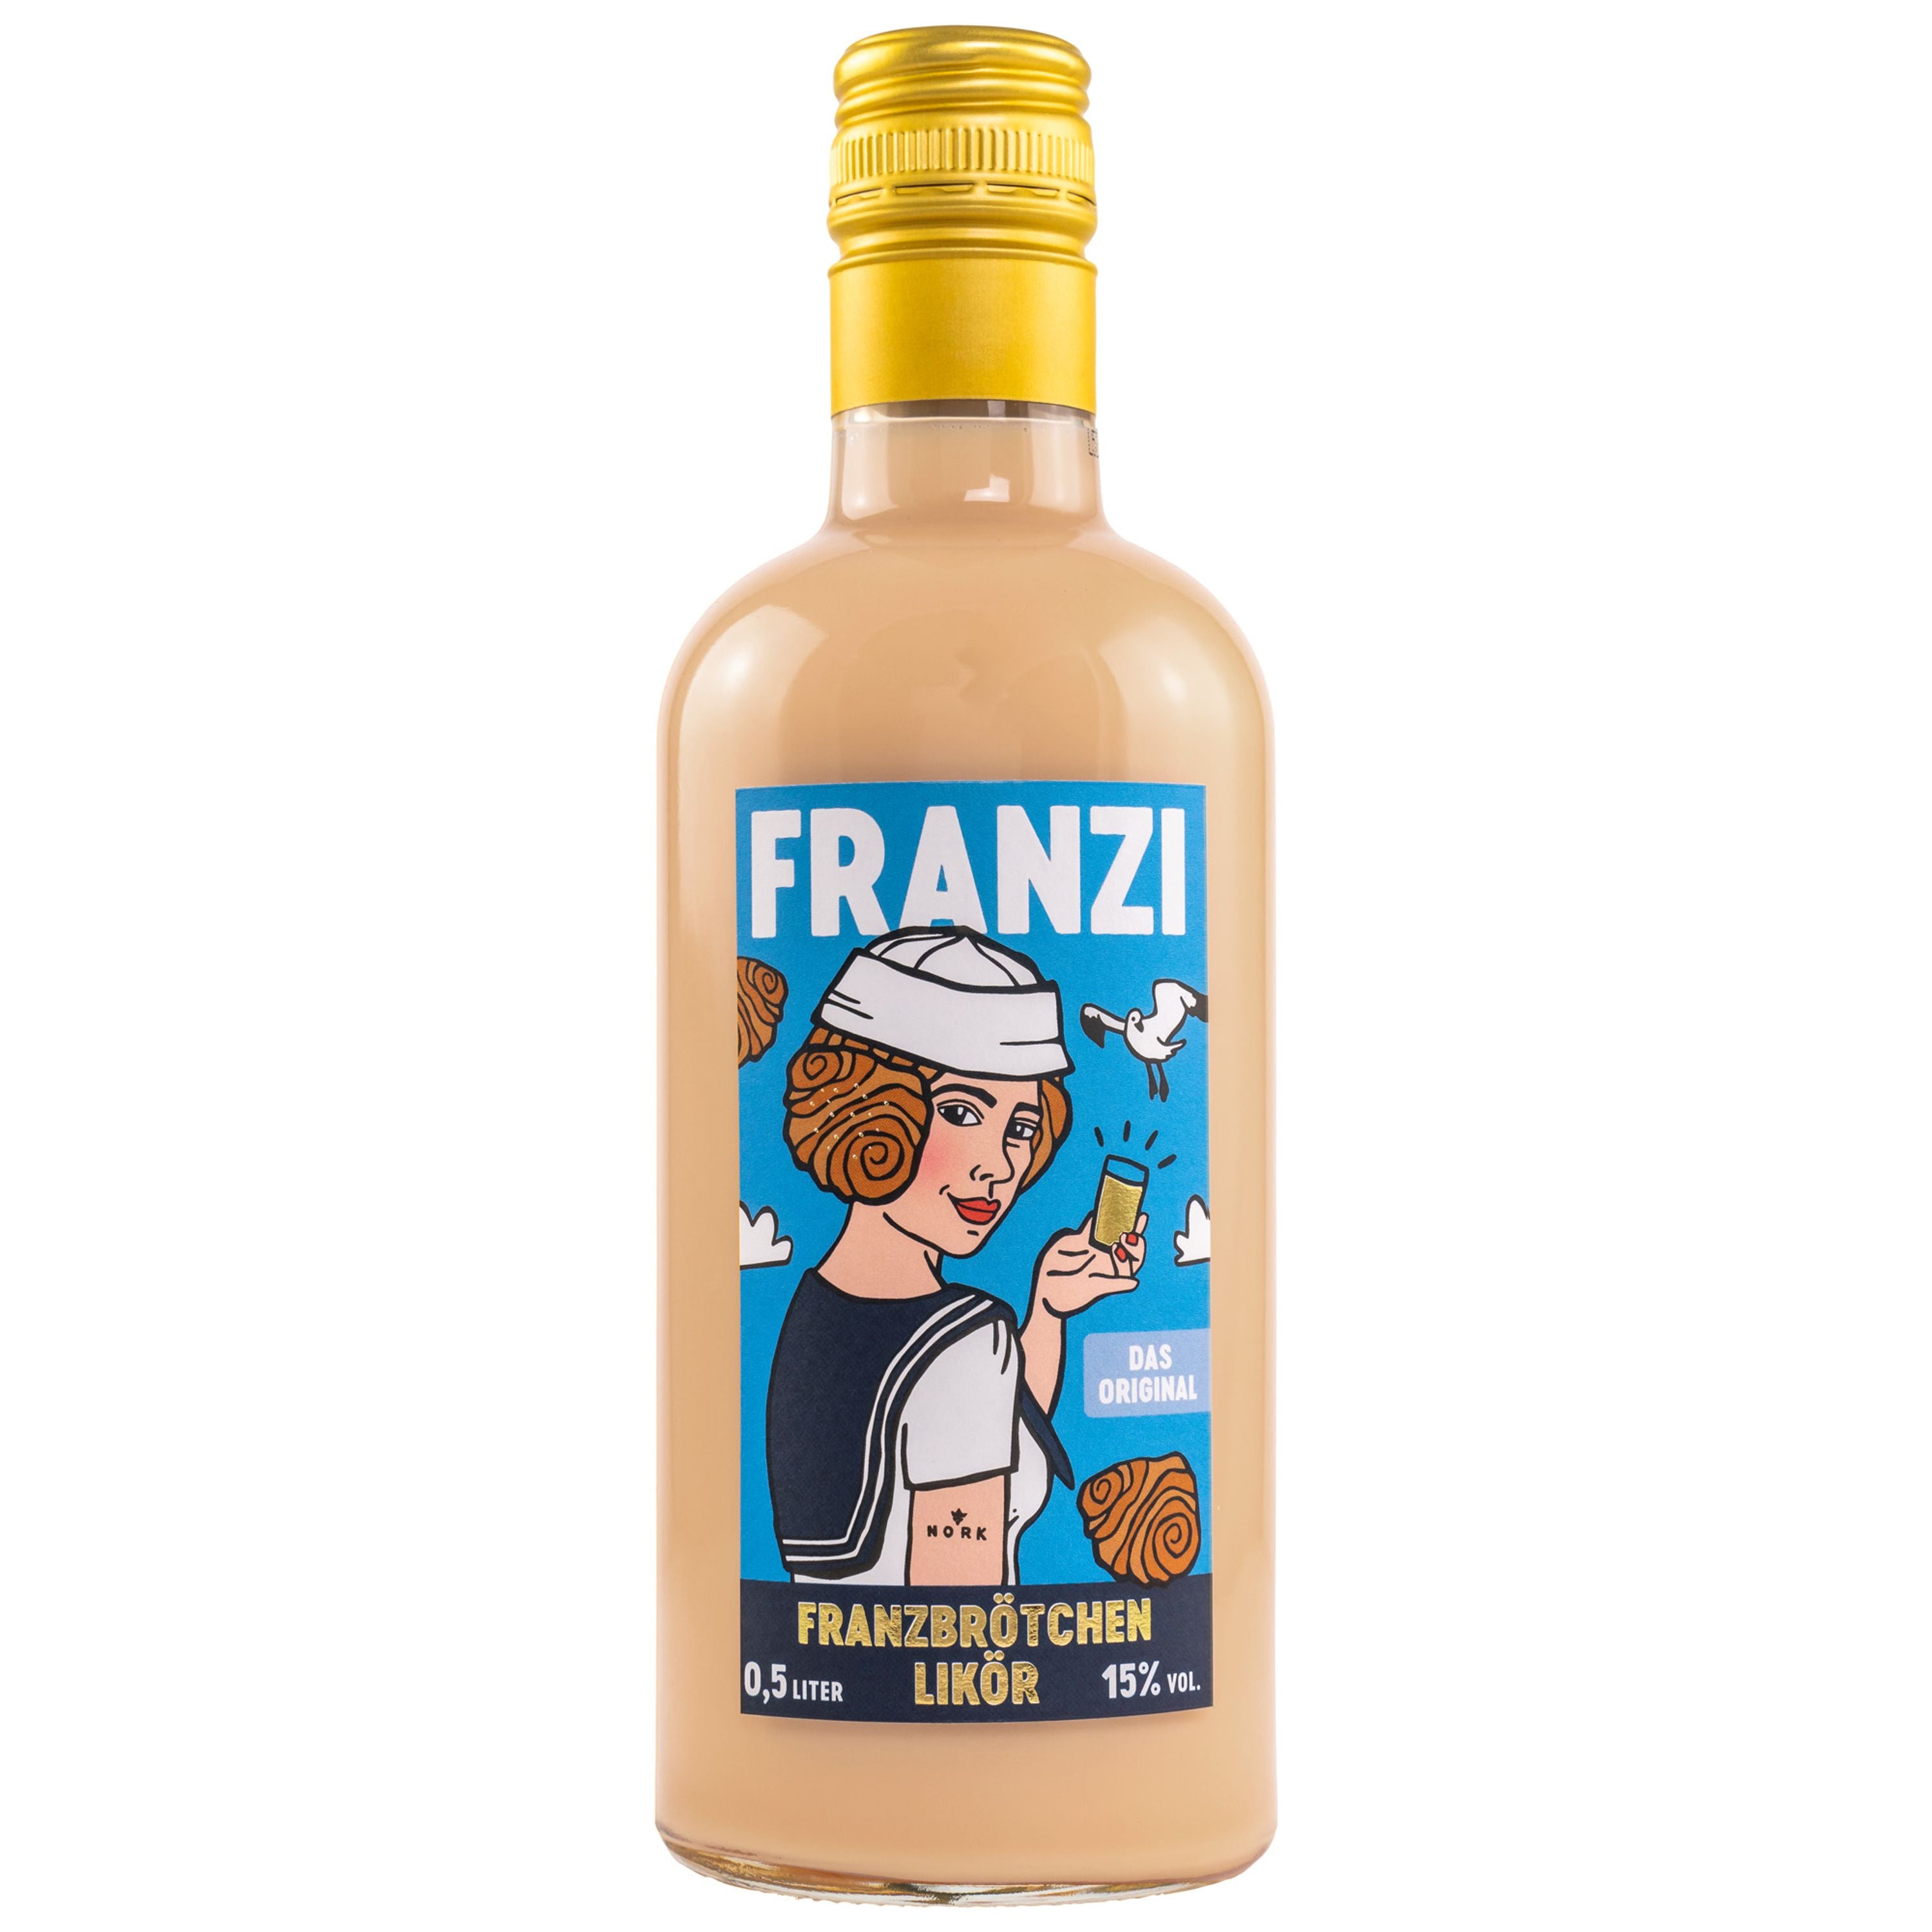 Franzi Franzbrötchen liqueur 0.5l, alc. 15% by volume